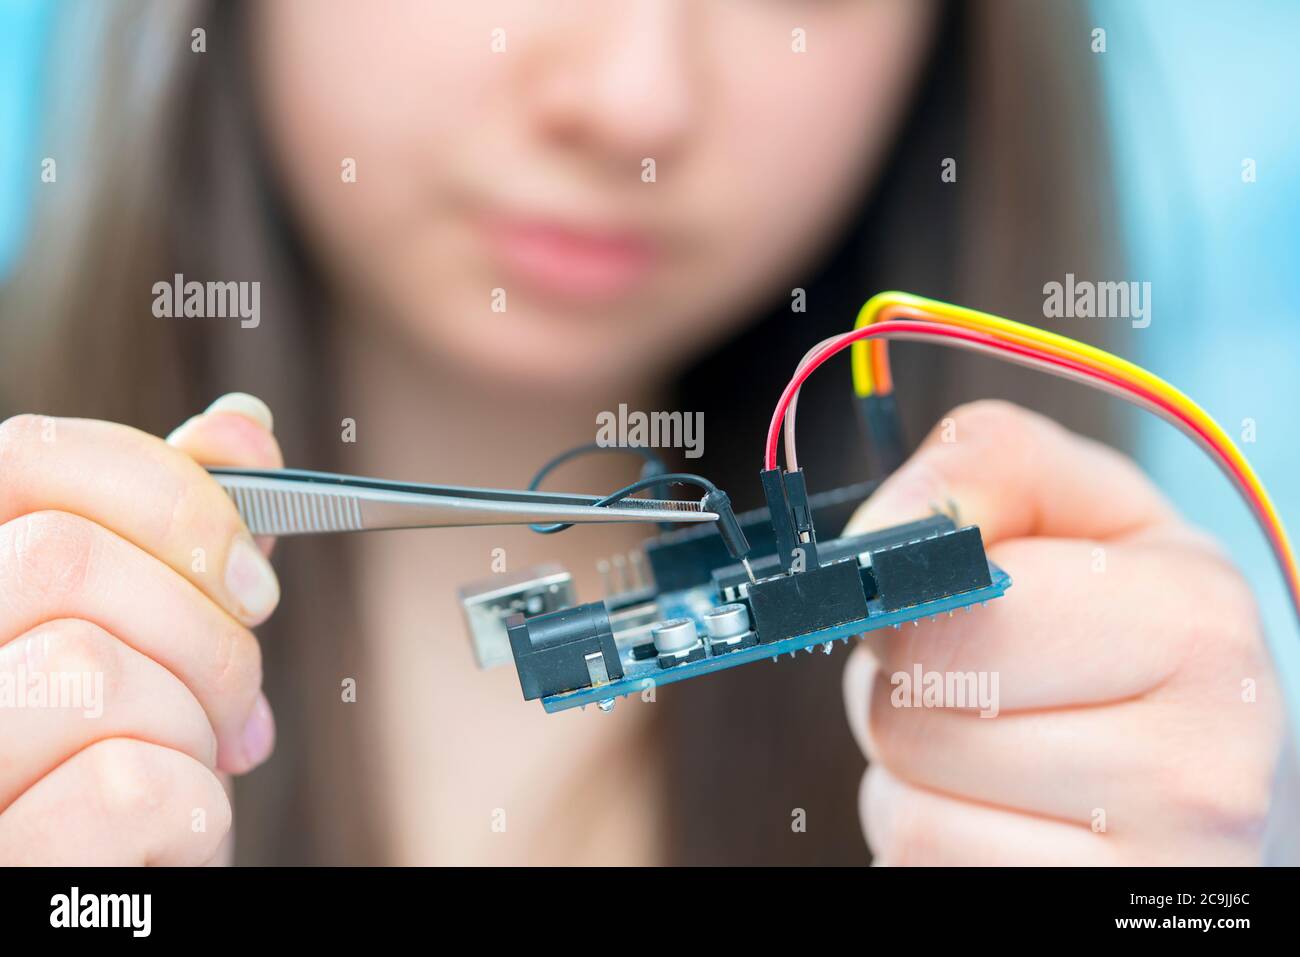 Mädchen arbeitet an Elektronik-Projekt. Stockfoto